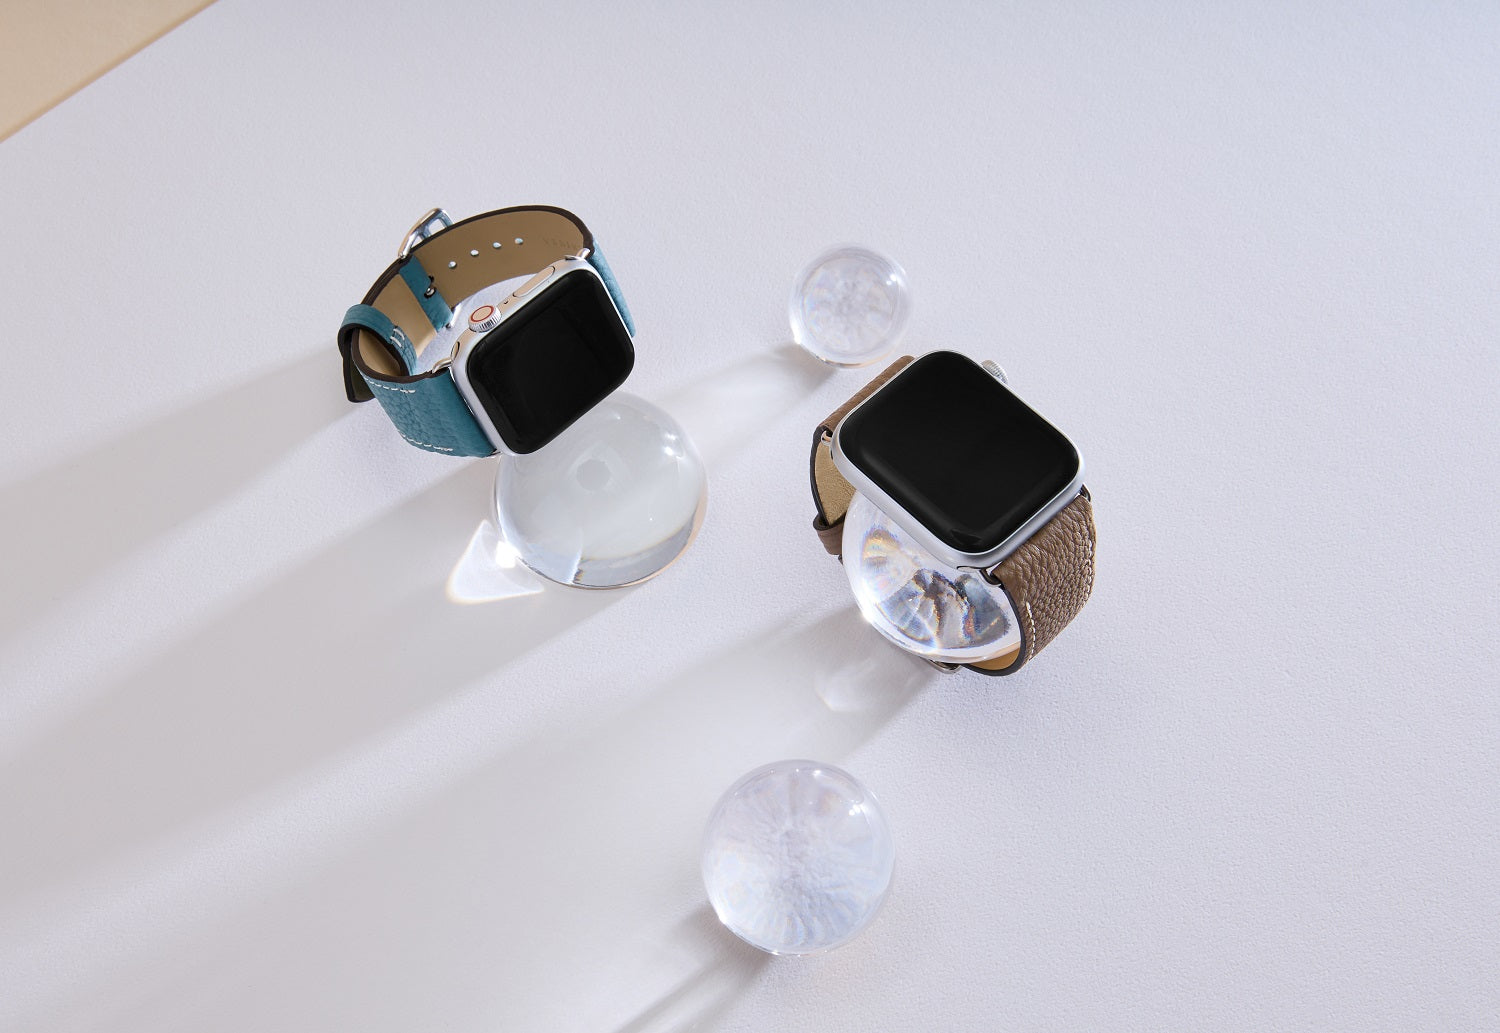 Apple Watch 가죽 밴드【42 mm/44 mm/45 mm/49 mm, M/L 사이즈】 (어댑터：골드)